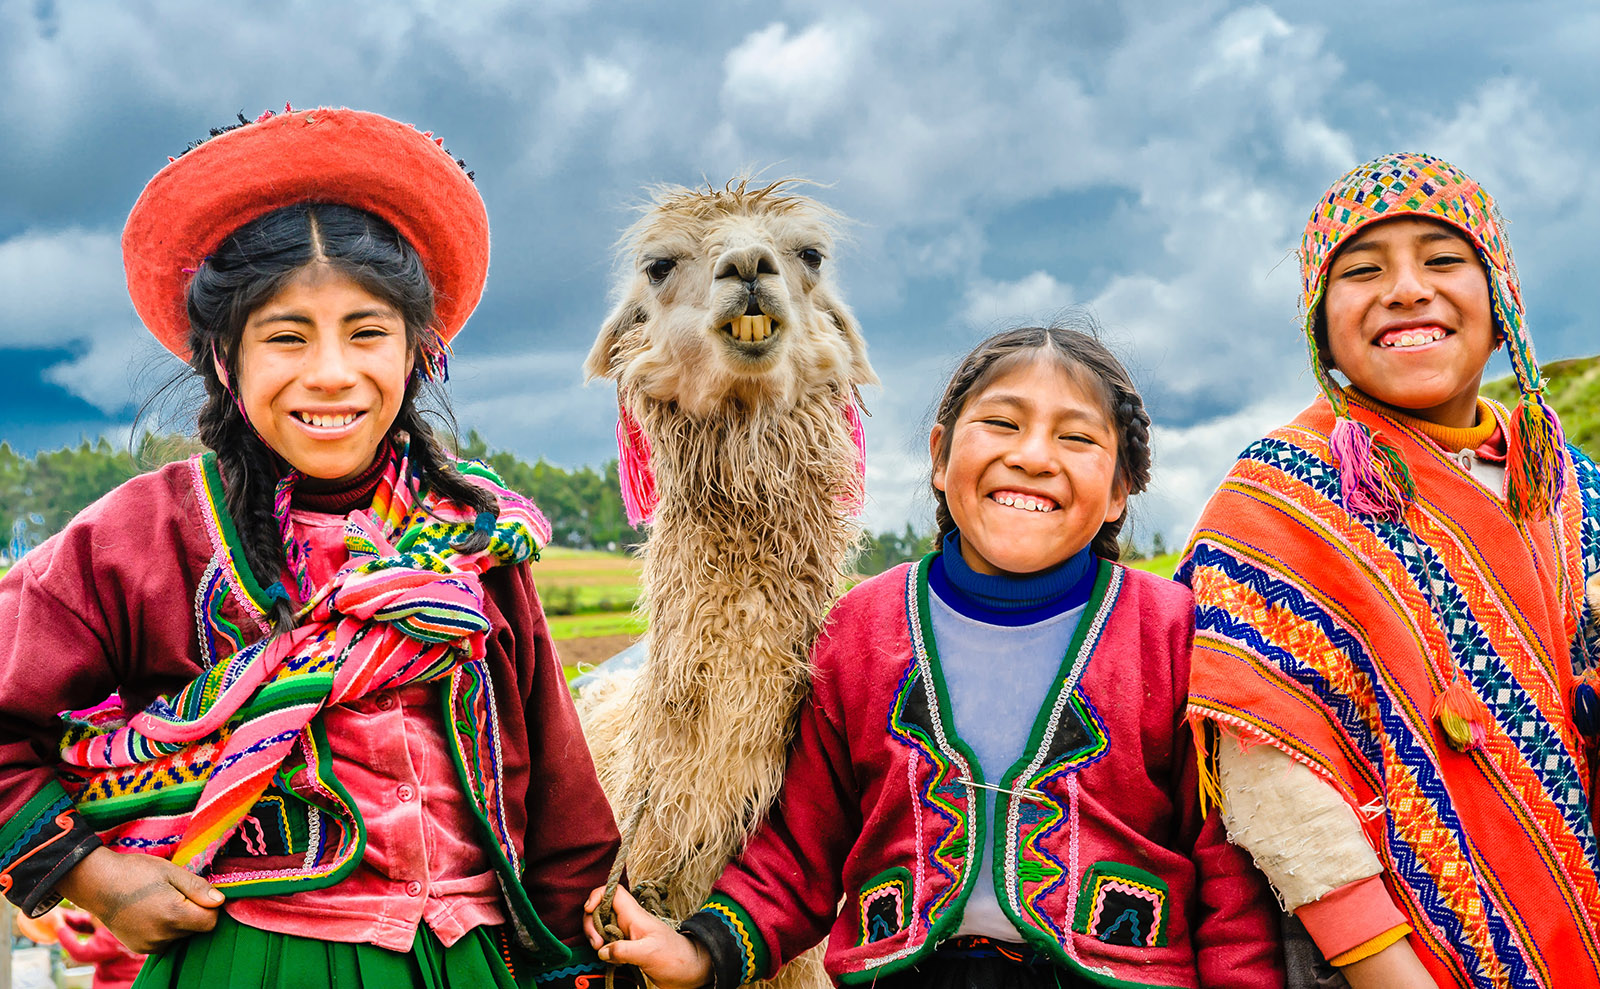 6 Great Books Set in Peru That We Love